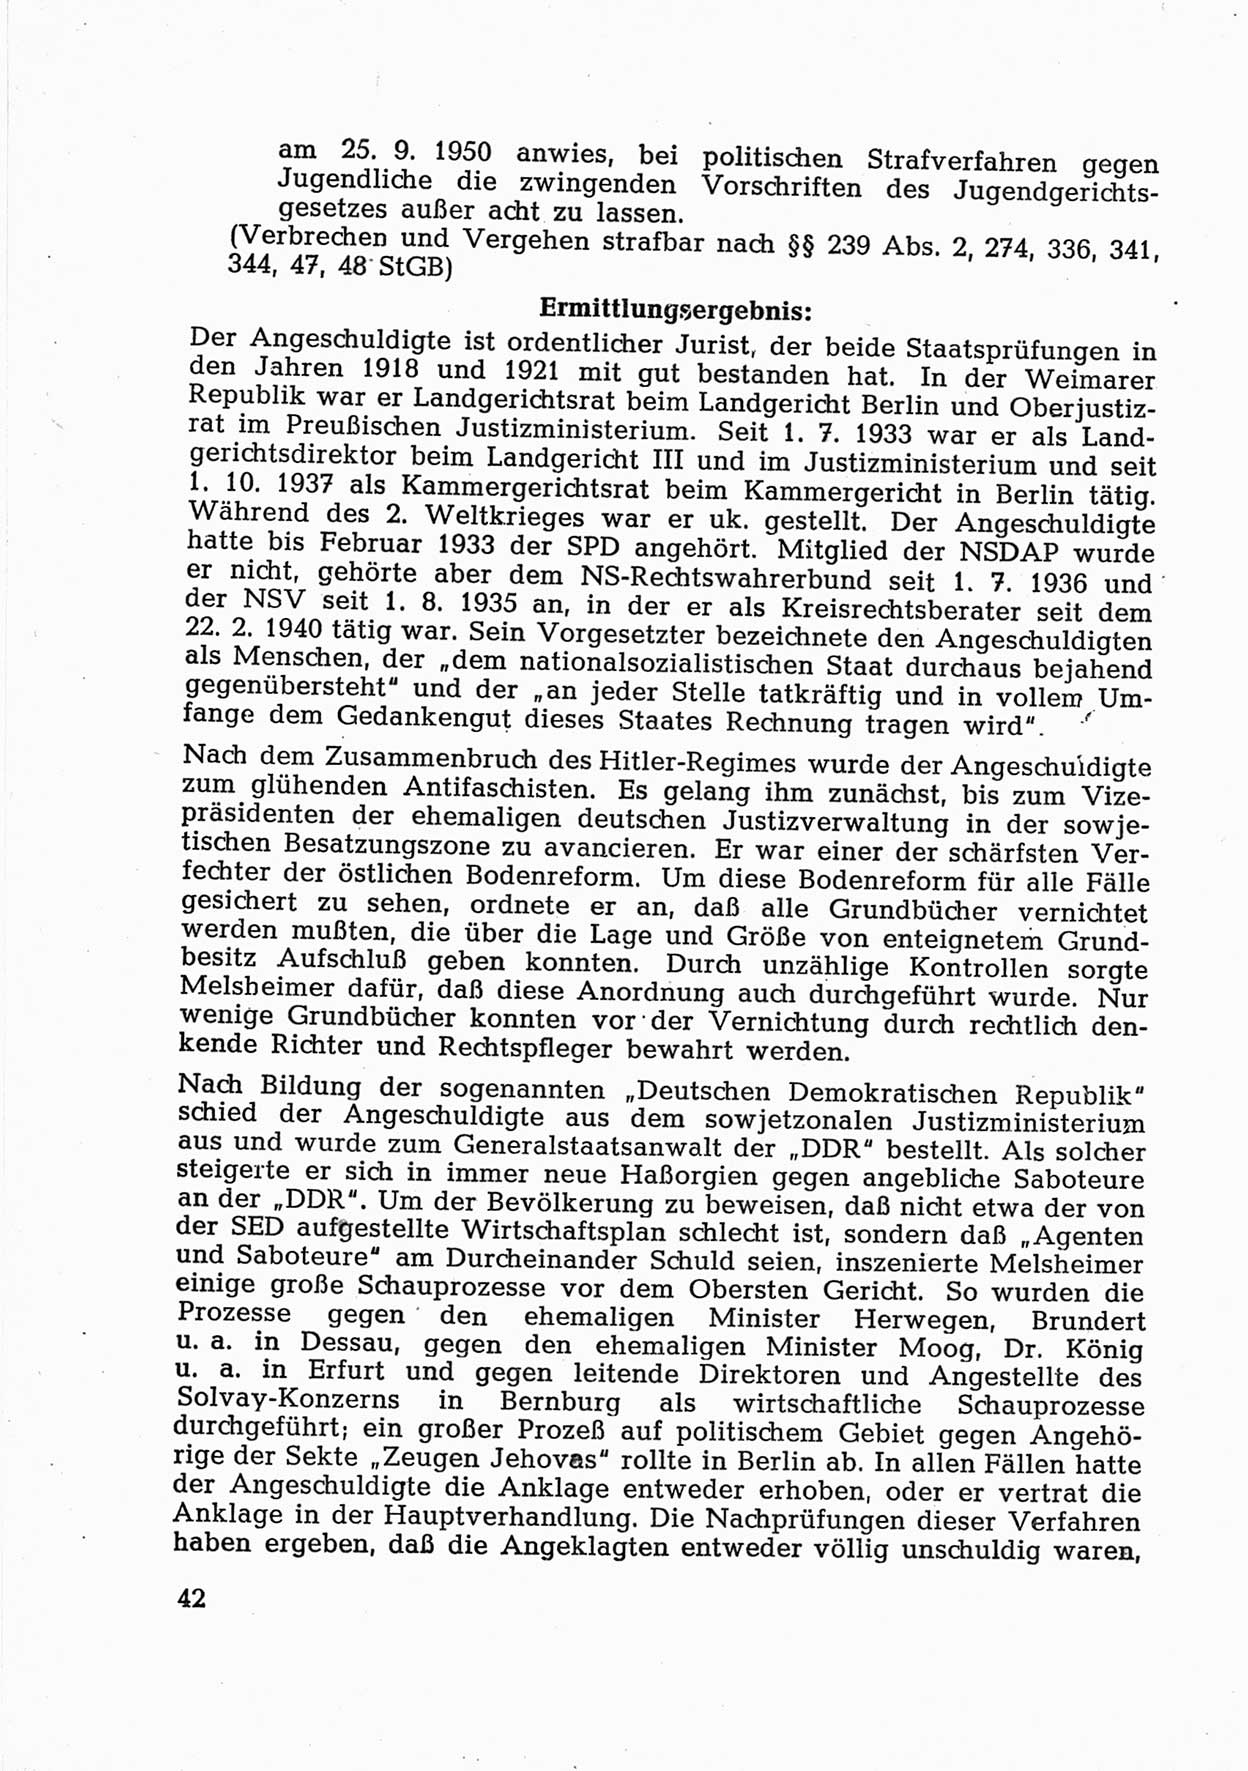 Dokumente des Unrechts [Deutsche Demokratische Republik (DDR)], herausgegeben vom Bundesministerium für gesamtdeutsche Fragen (BMG) [Bundesrepublik Deutschland (BRD)], Bonn, ca. 1952, Seite 42 (Dok. UnR. DDR BMG BRD 1952, S. 42)